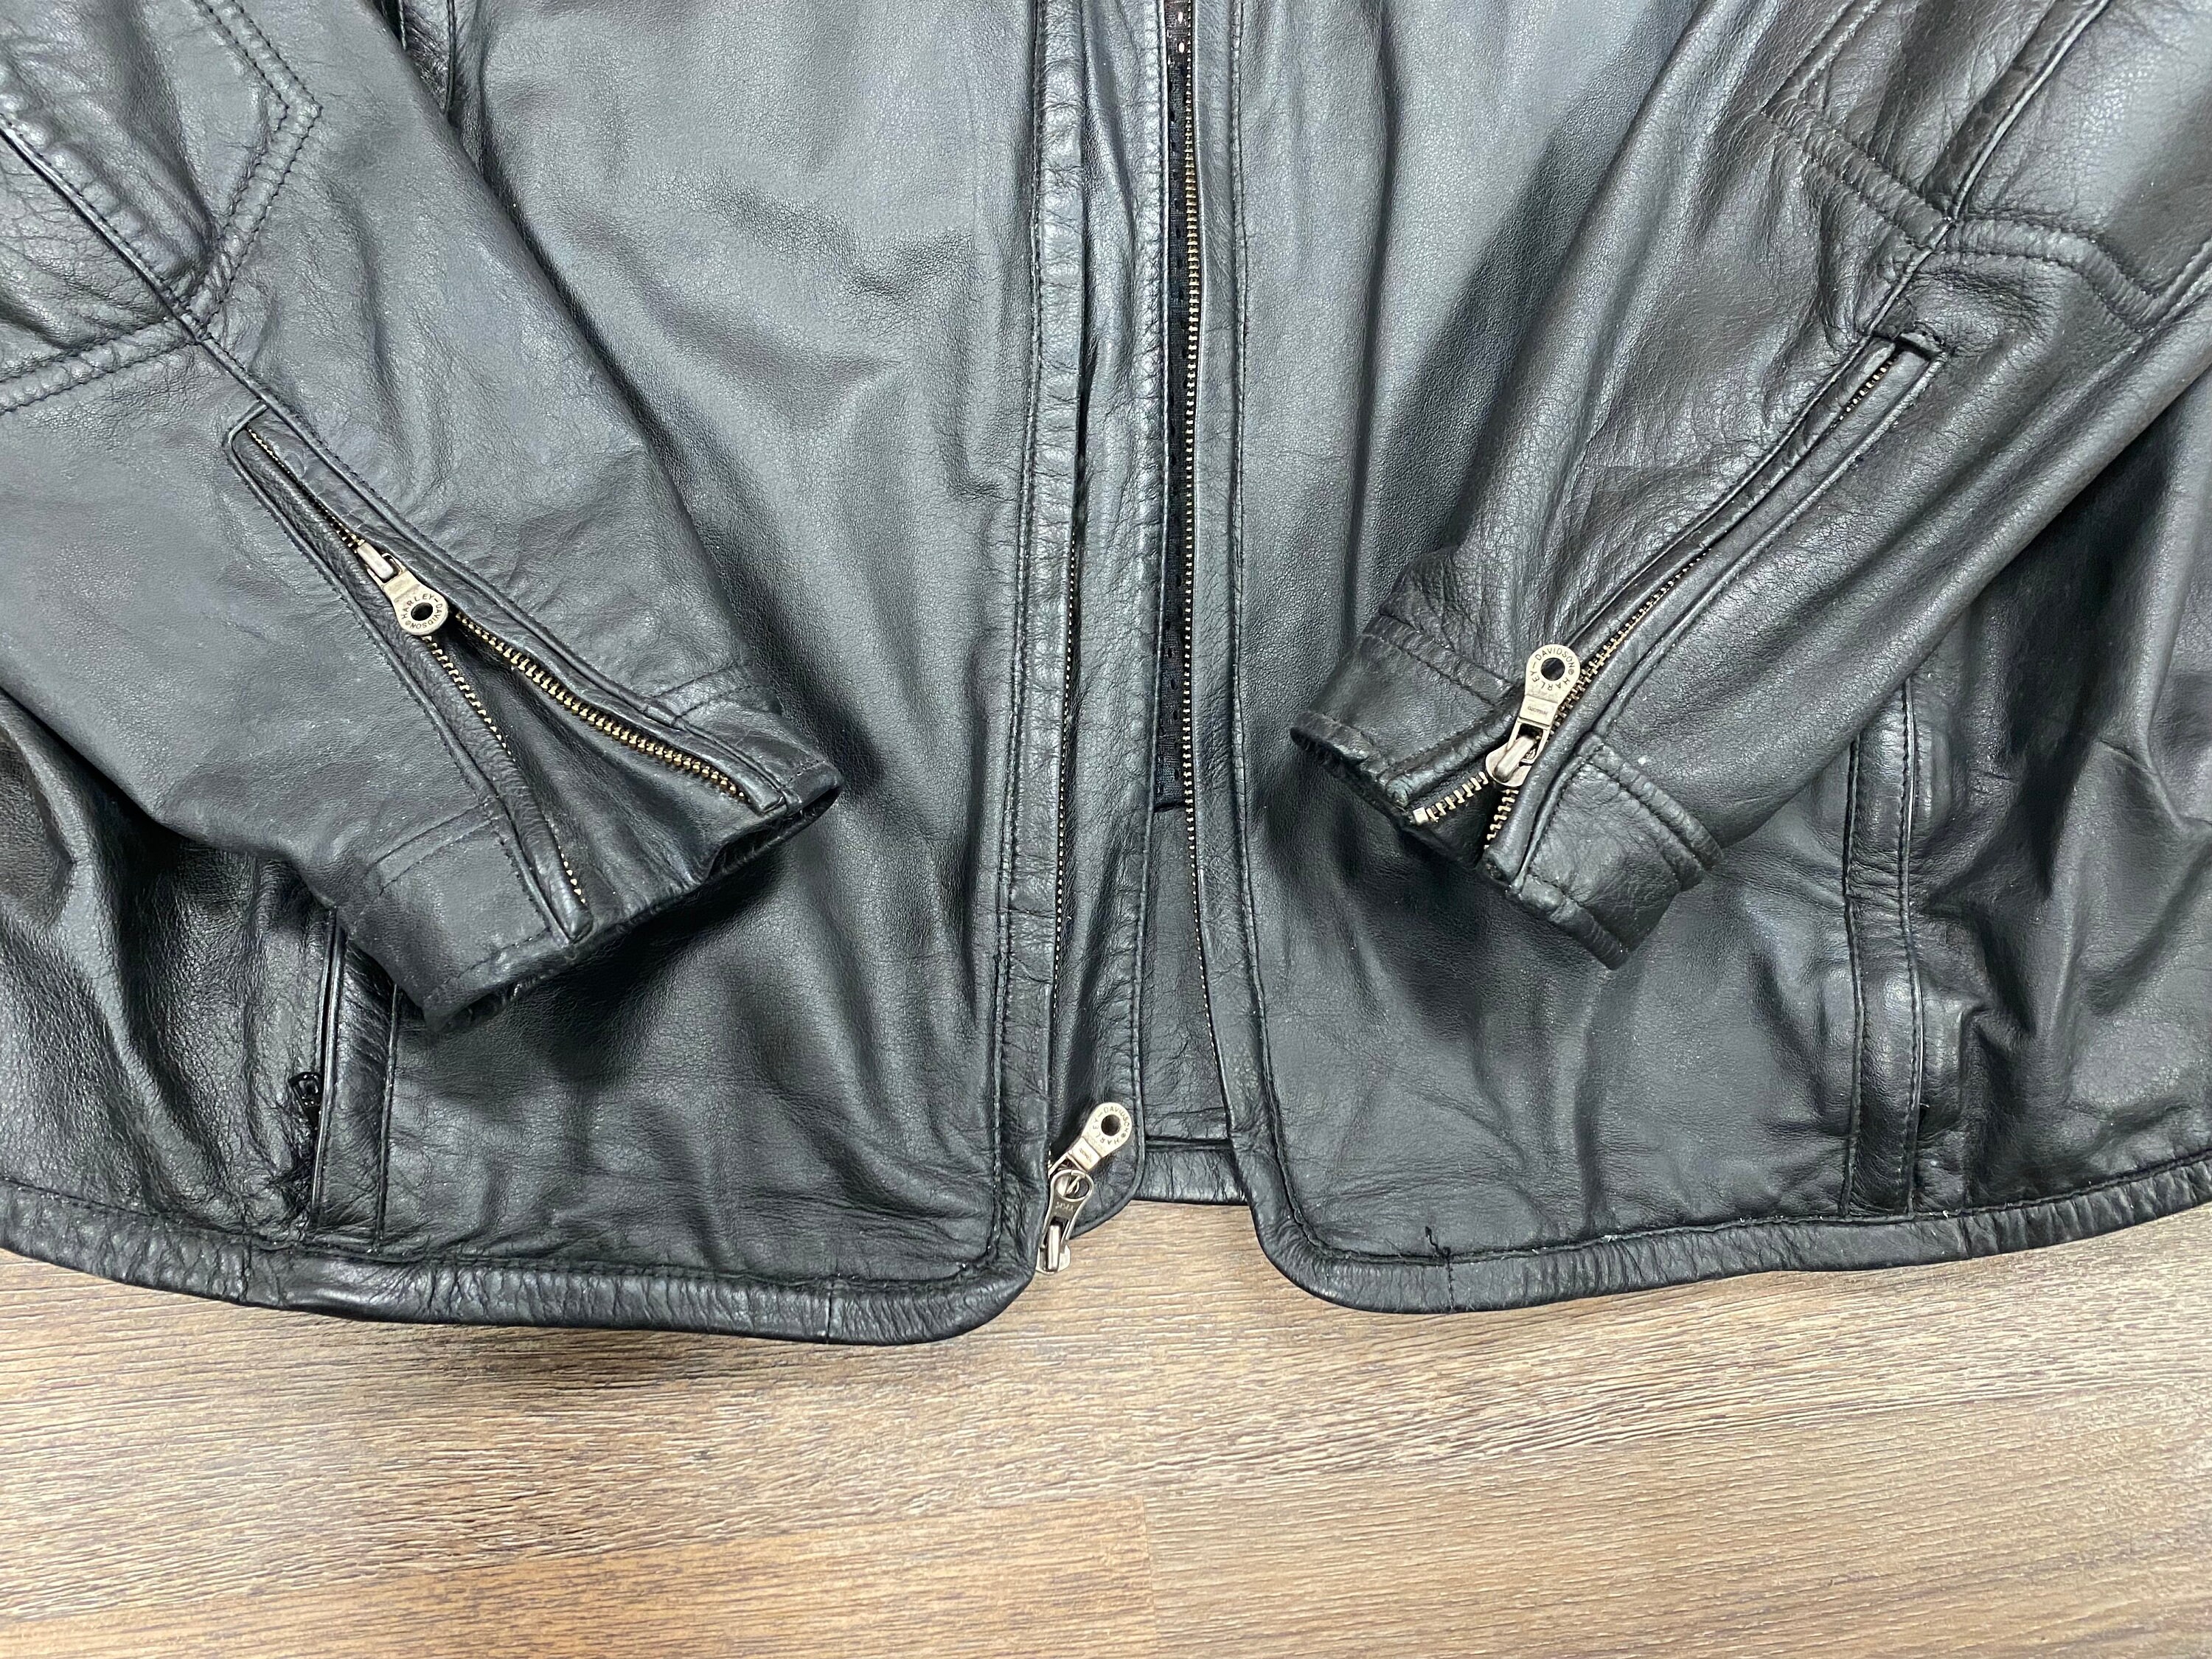 Rare Vintage Harley Davidson Leather Jacket, Black, Mens Size 2x - Etsy